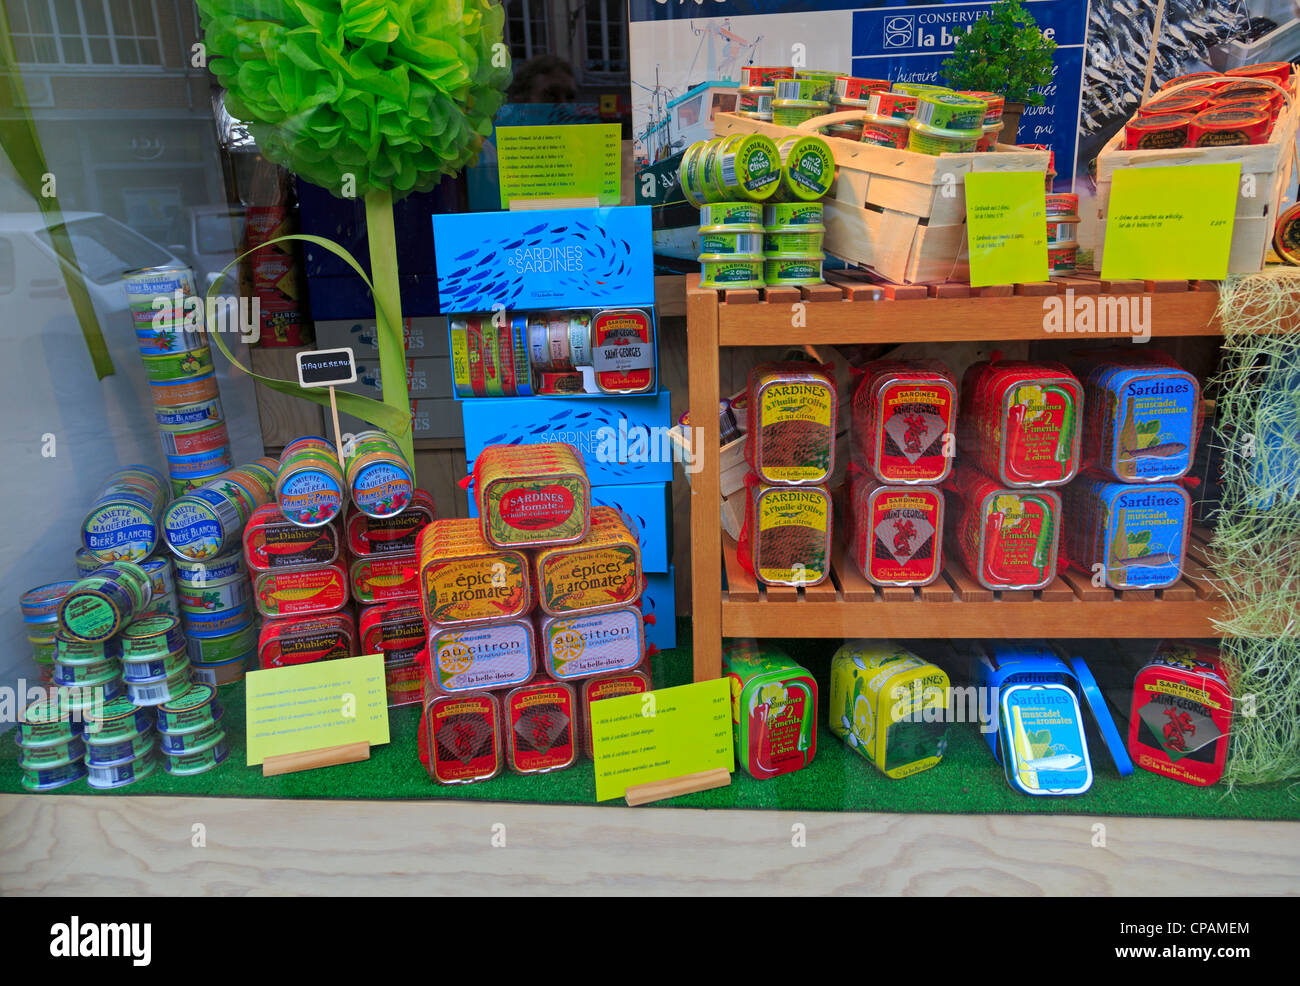 L'affichage des boîtes de sardines à l'dans un magasin à Honfleur. Les produits locaux sont populaires avec les visiteurs du port de pêche historique. Banque D'Images